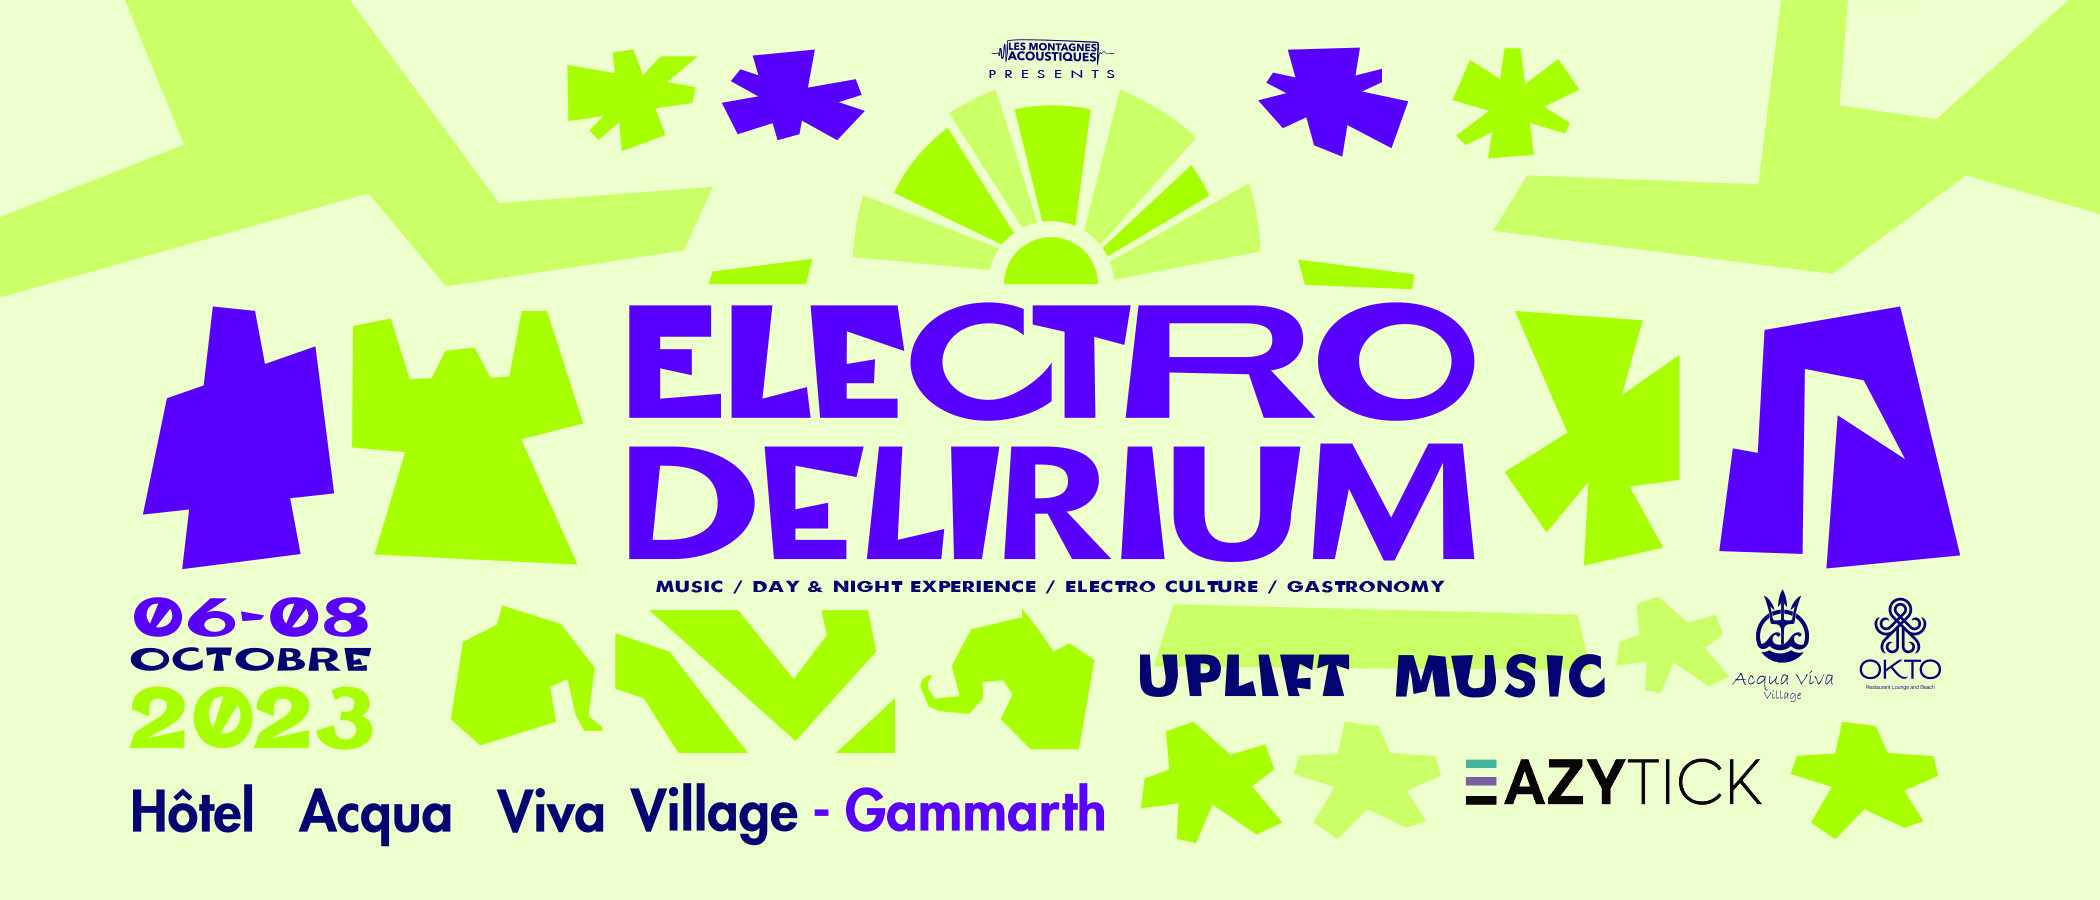 Electro Delirium   Uplift Music